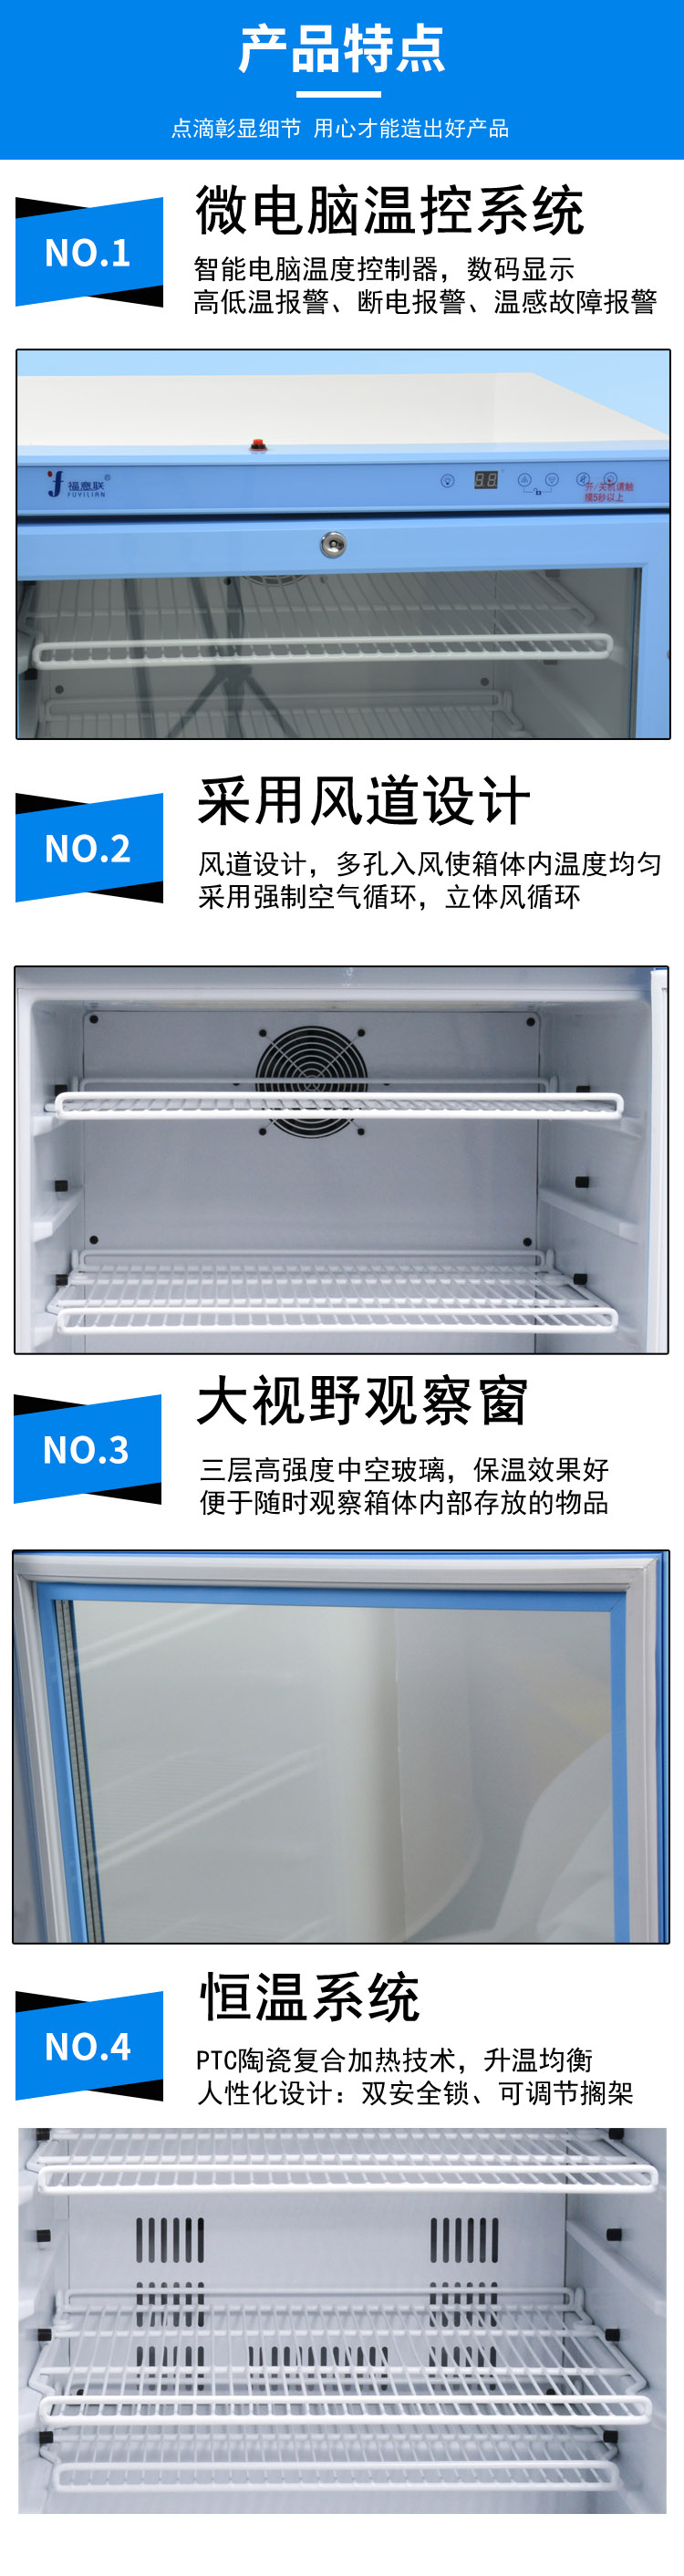 医用试剂冷藏柜 检验科恒温冰箱 药品阴凉展示柜